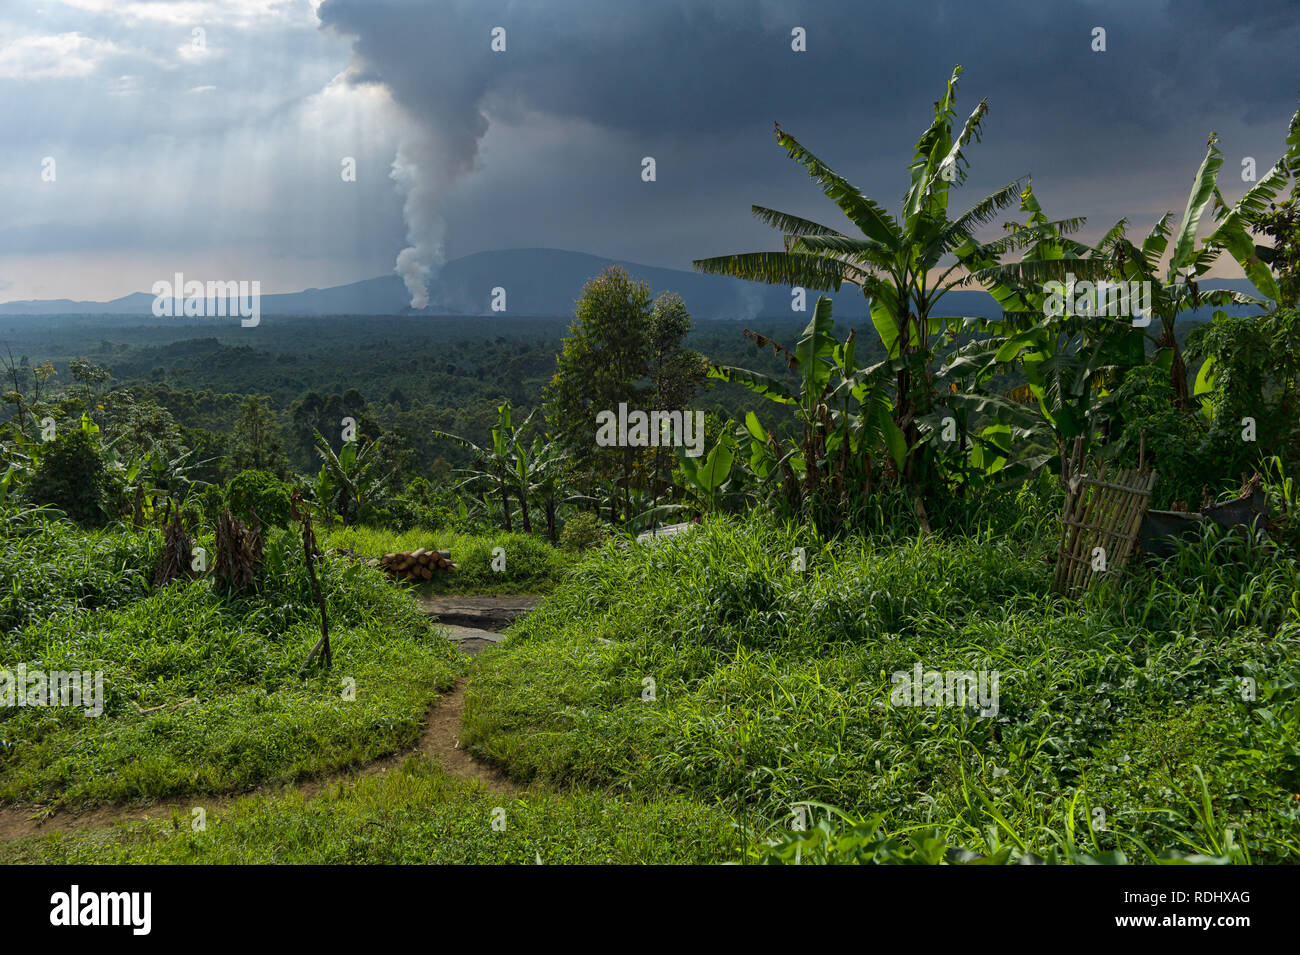 Nyamuragira, ein aktiver Vulkan, bricht in den Hintergrund eines ländlichen Dorfes im Virunga Nationalpark in der Demokratischen Republik Kongo. Stockfoto